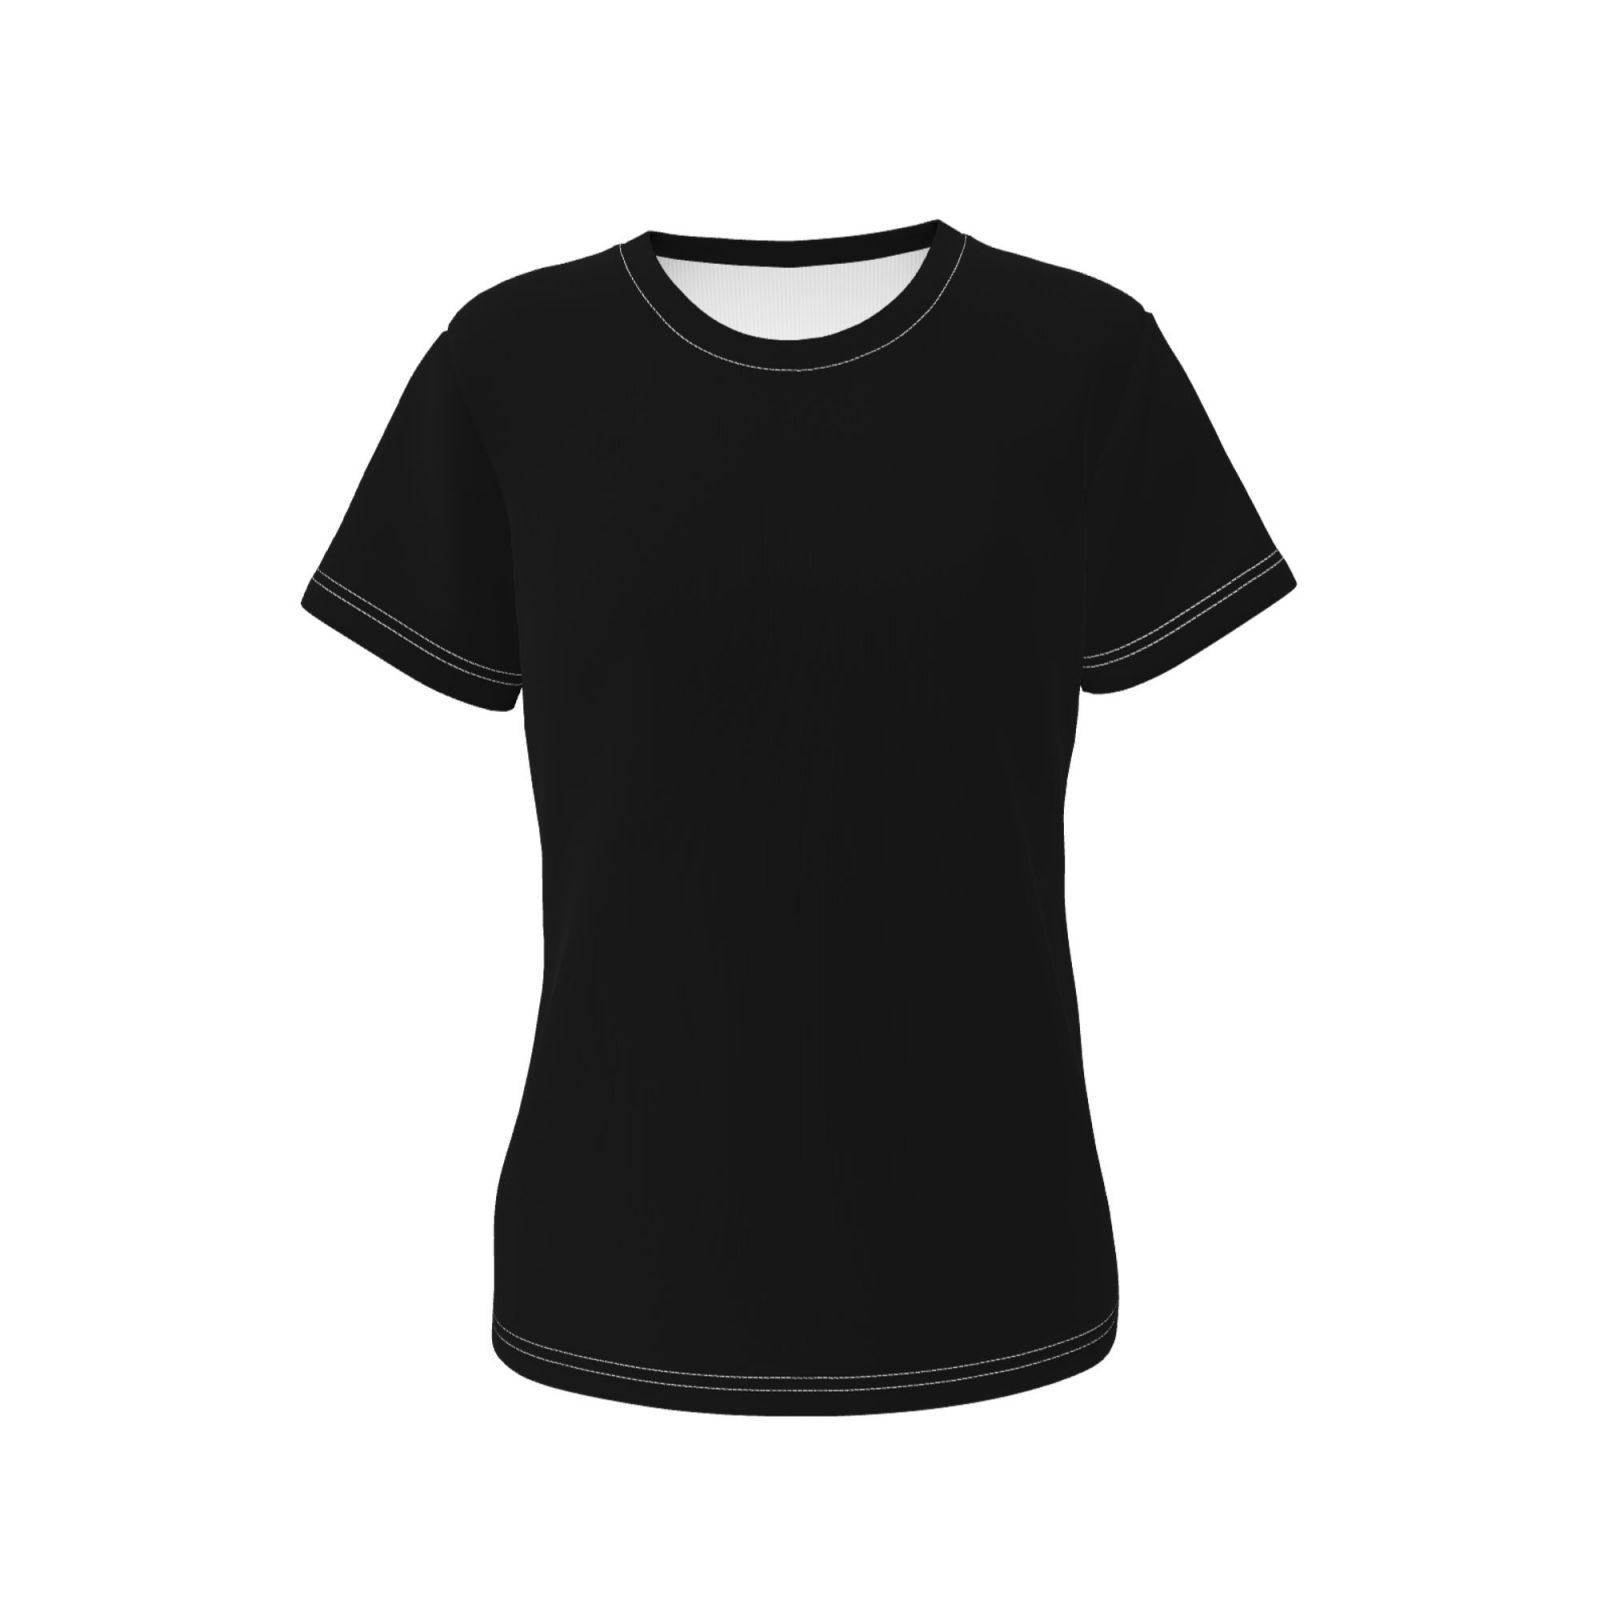 Women's Short-Sleeve T Shirts